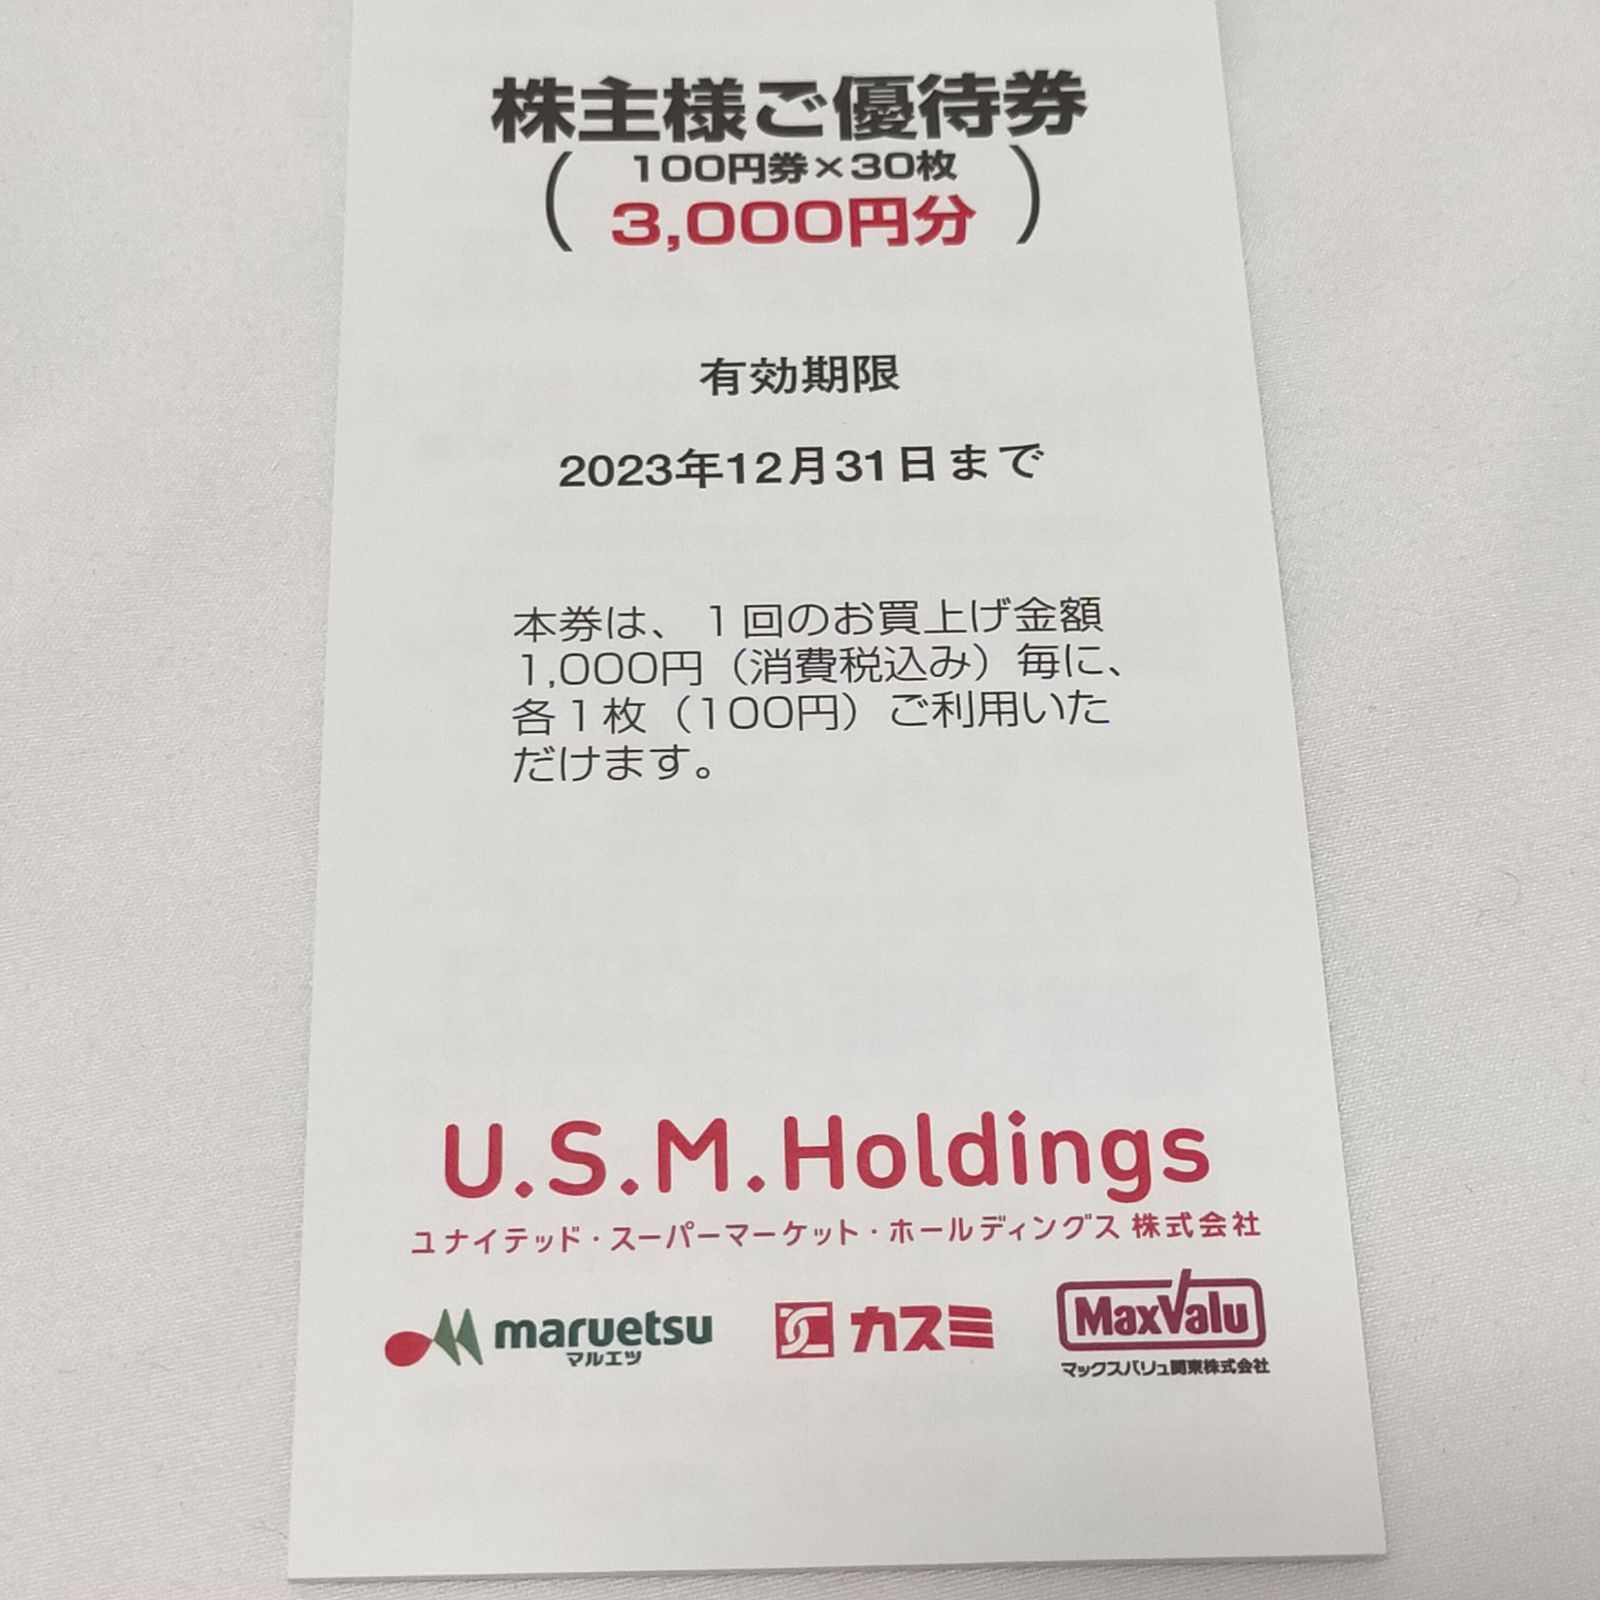 U.S.M.Holdings 株主優待 3000円分 ユナイテッド スーパーマーケットホールディングス - HirozSHOP ベビー子供服、雑貨等  - メルカリ